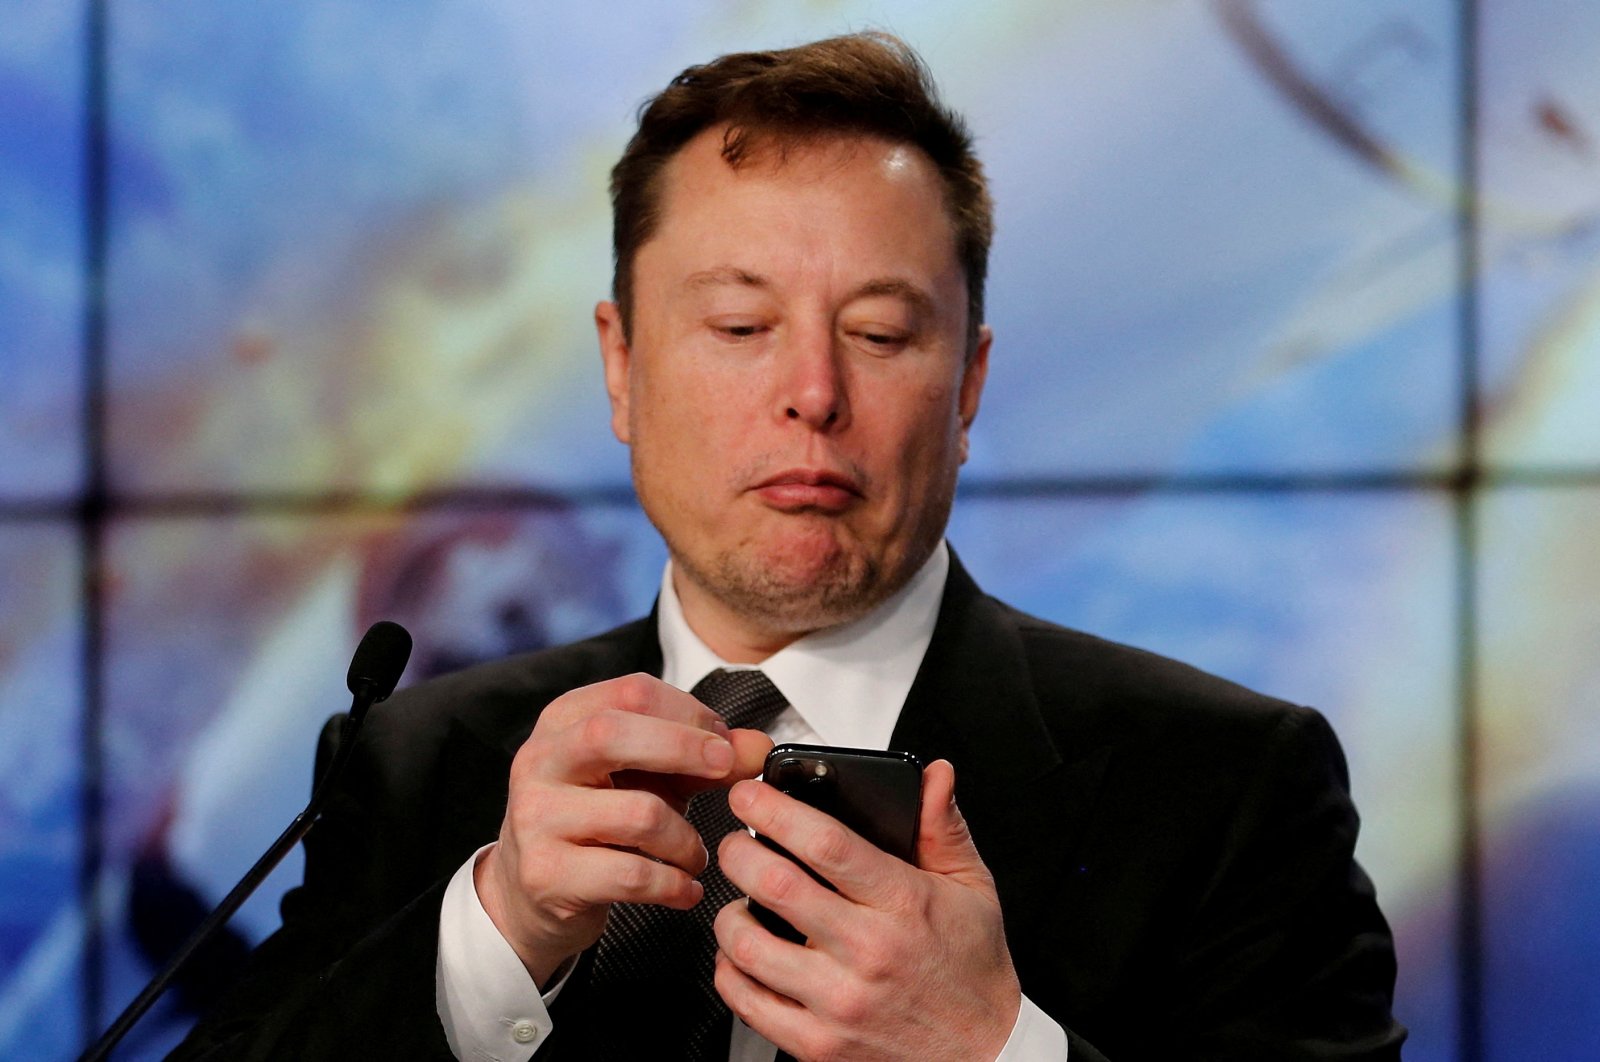 Musk memberi tahu bank bahwa dia akan mengendalikan pembayaran Twitter, memonetisasi tweet